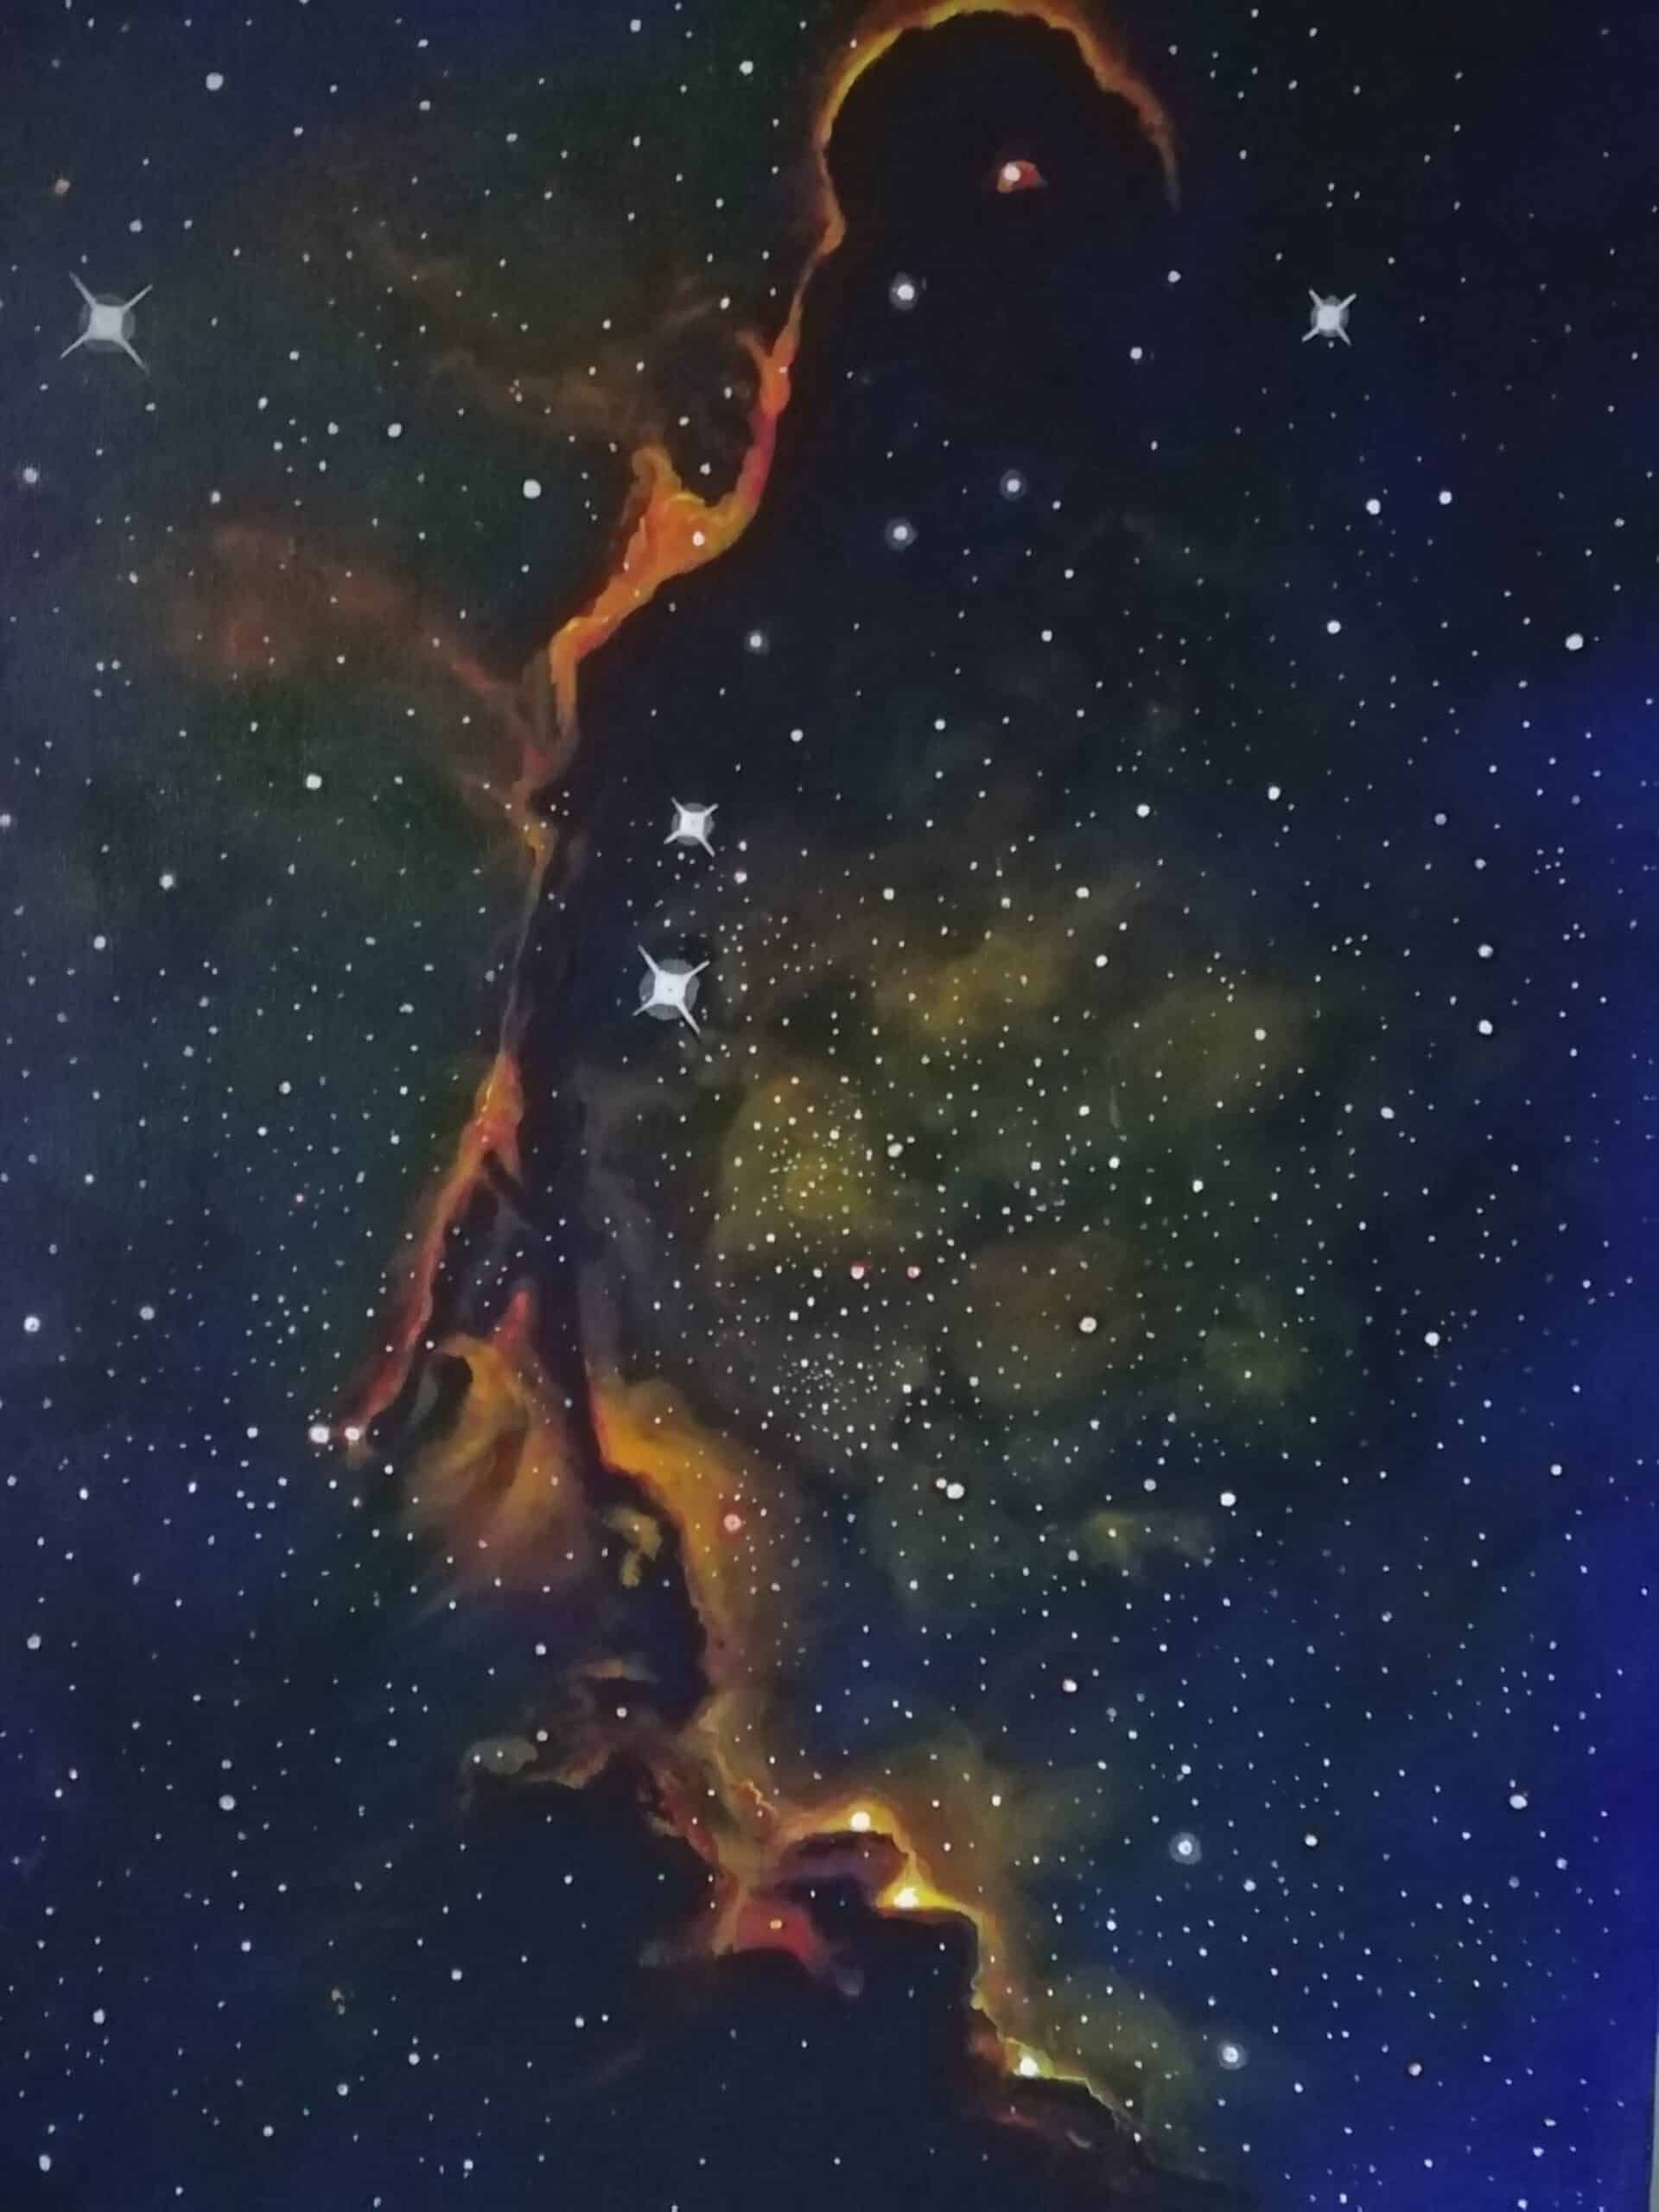 œuvre d'art, astronomie,acrylique sur toile 46/61, david morel artiste, gros plan sur la constellation de l'éléphant